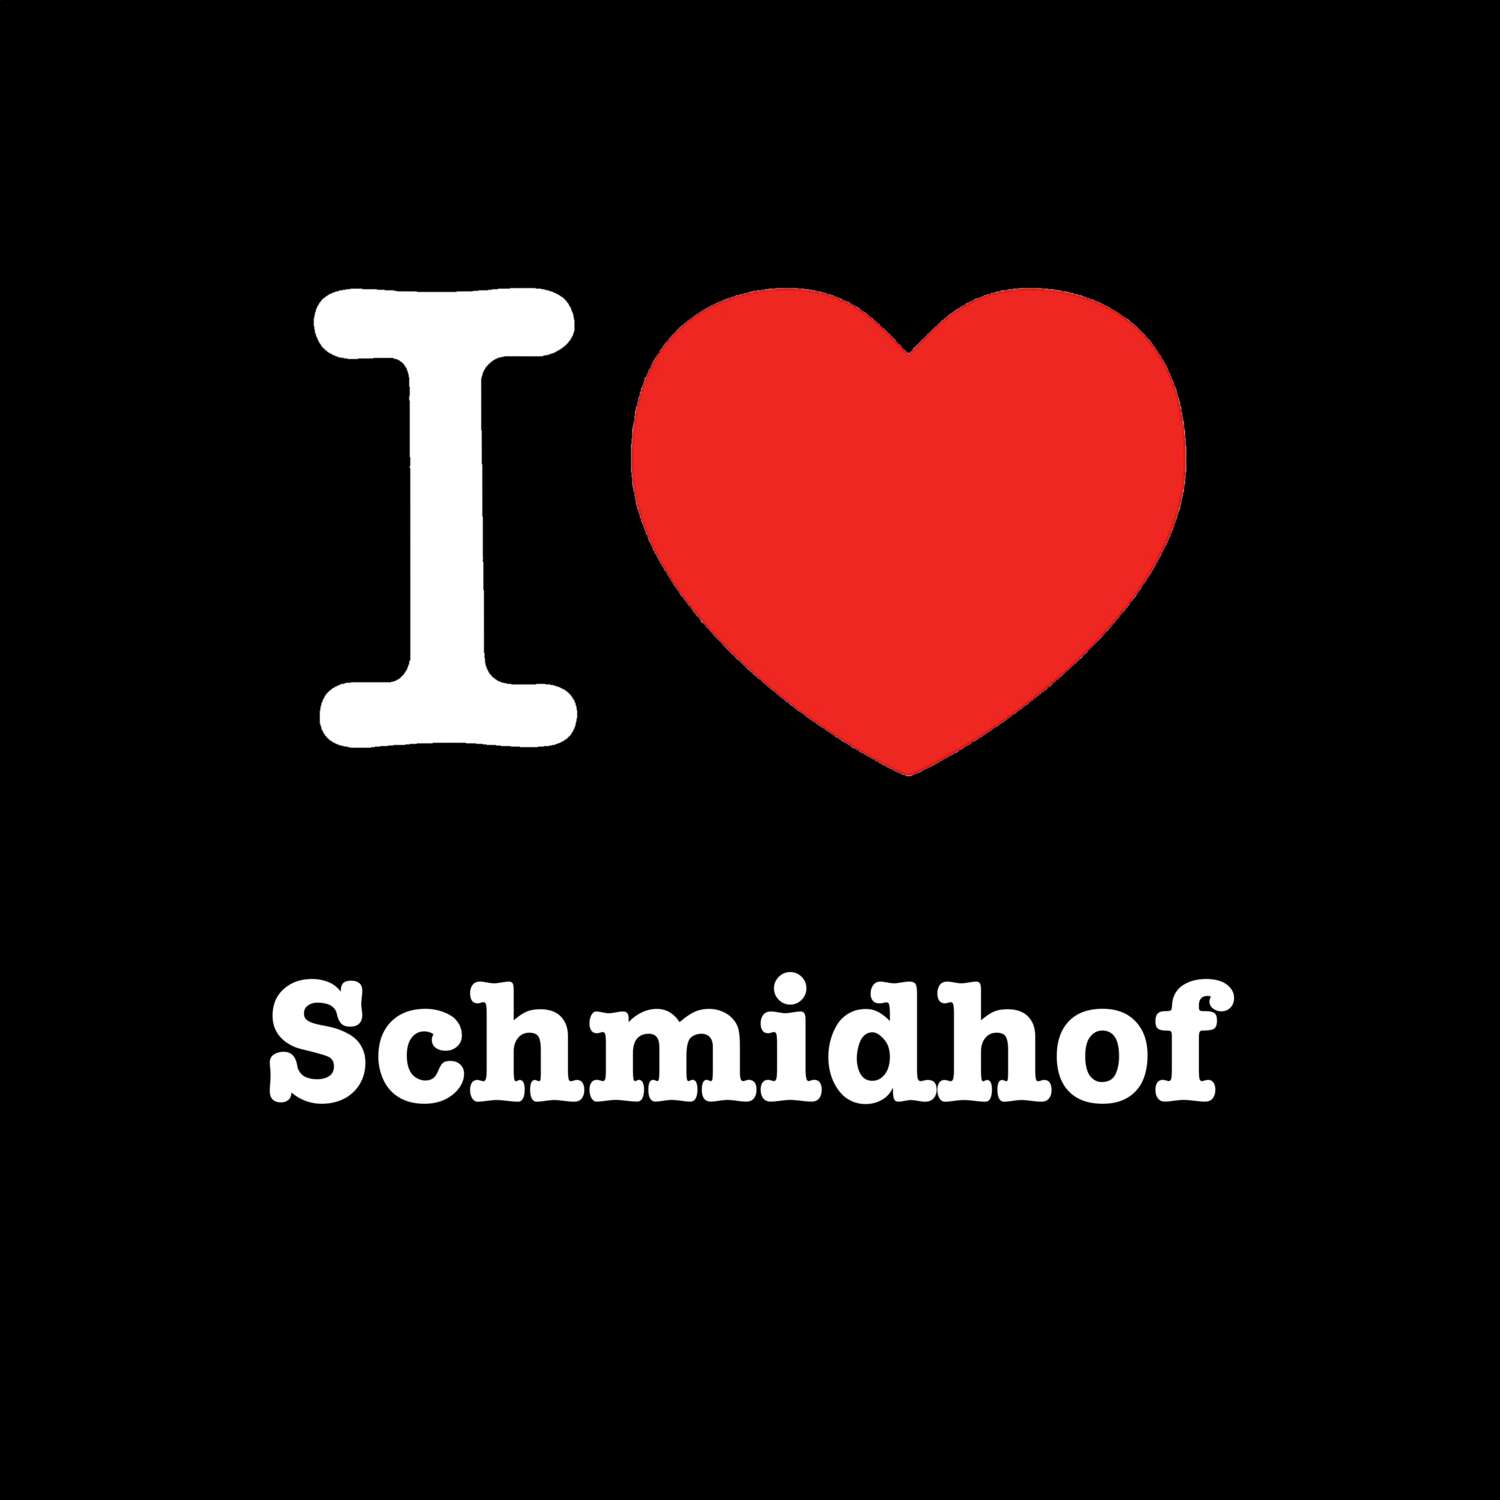 Schmidhof T-Shirt »I love«